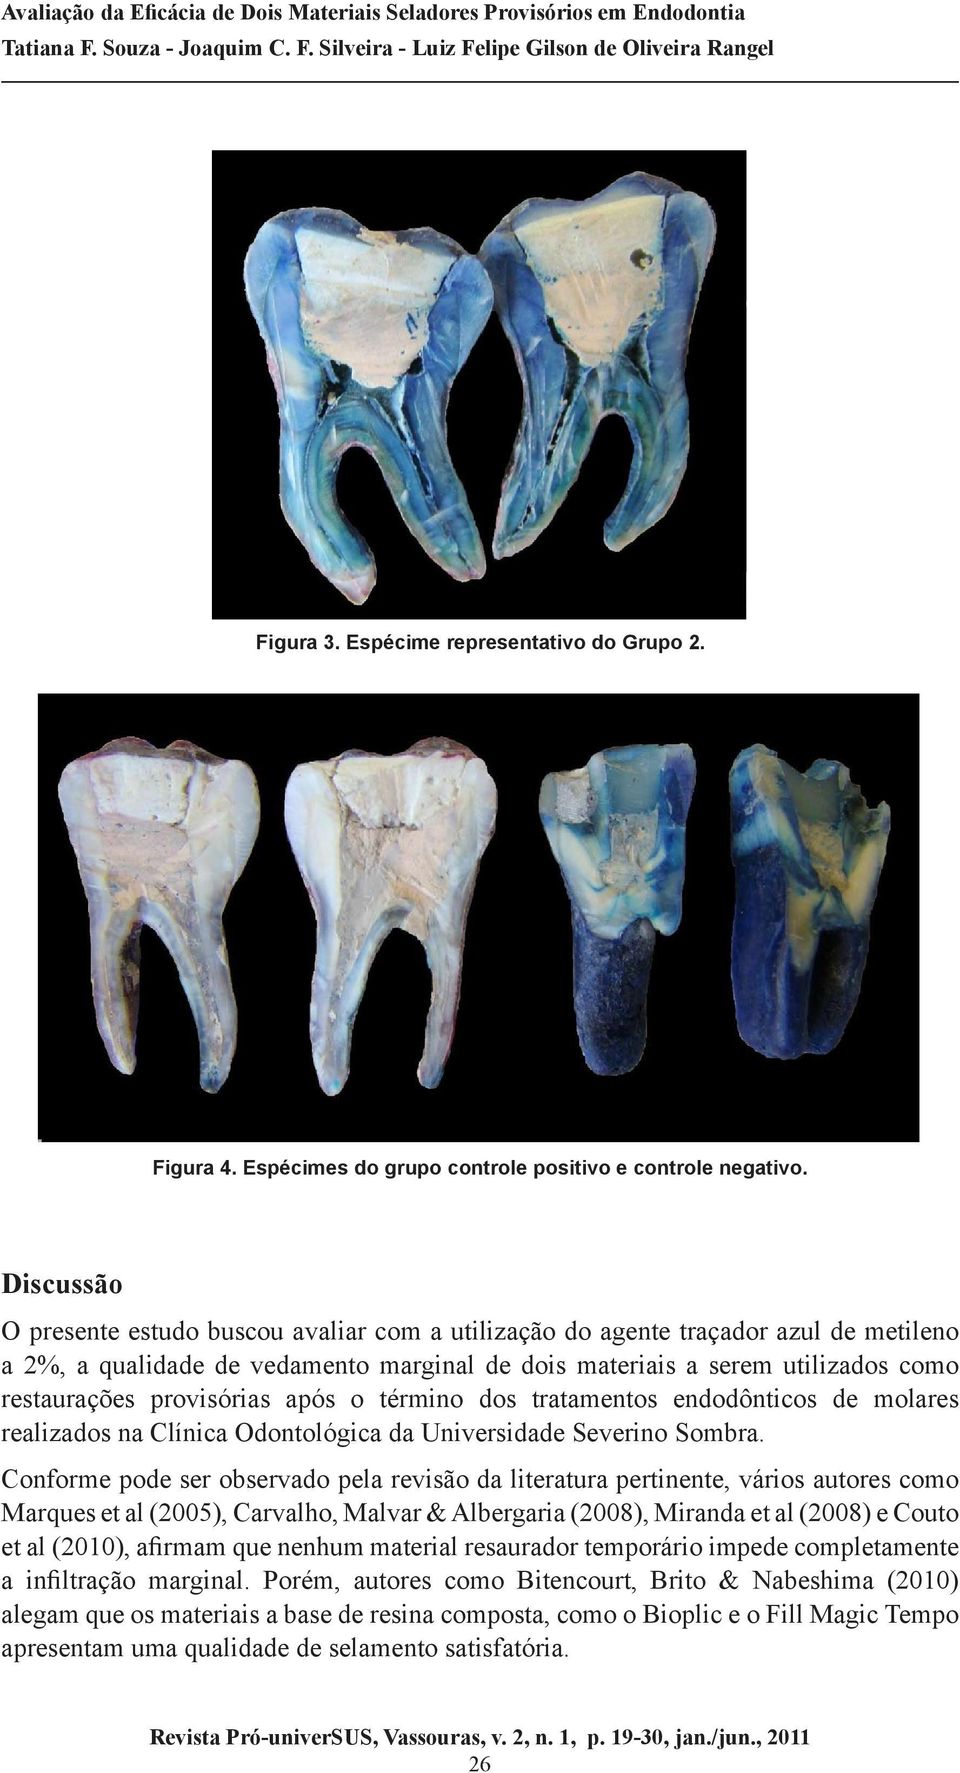 provisórias após o término dos tratamentos endodônticos de molares realizados na Clínica Odontológica da Universidade Severino Sombra.